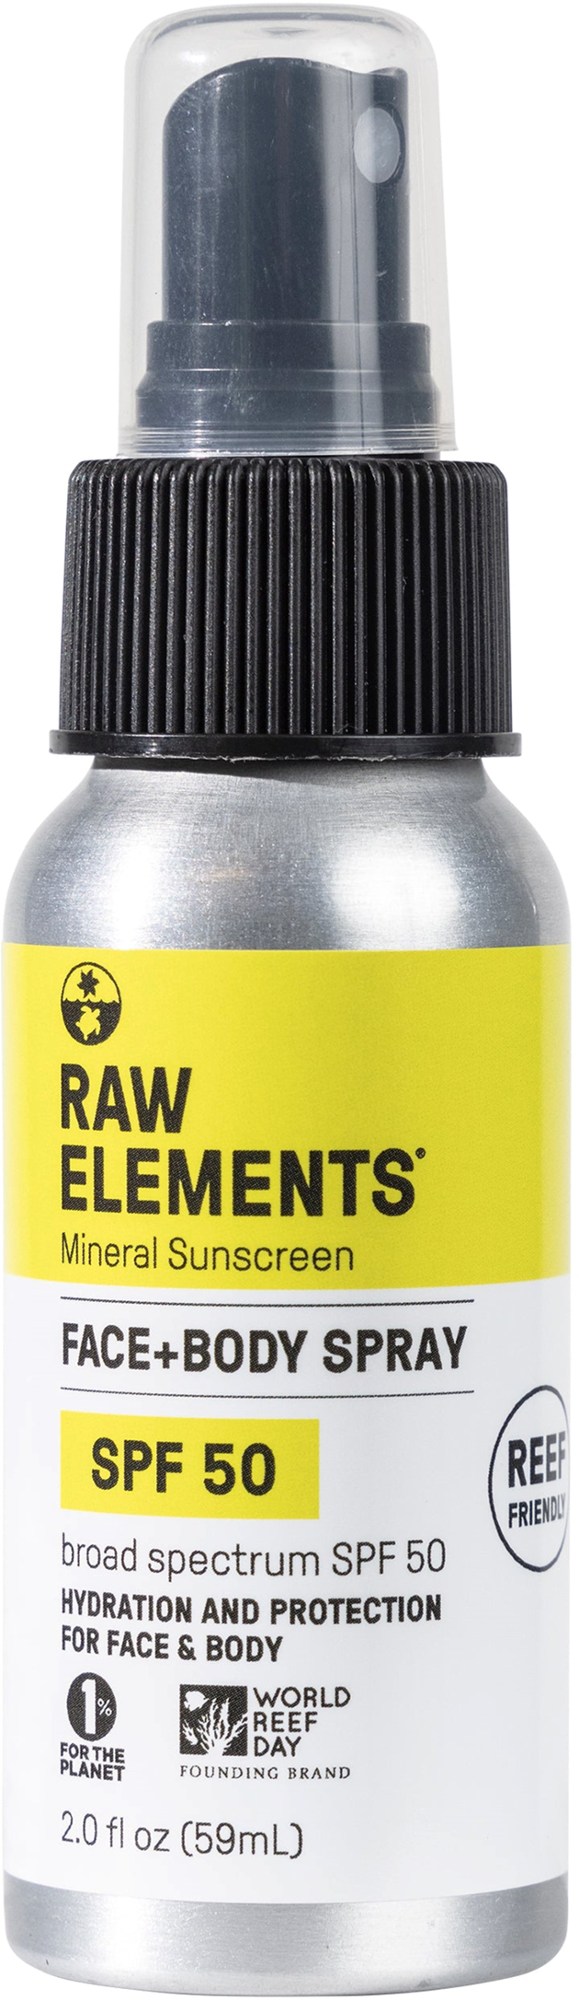 Минеральный солнцезащитный спрей SPF 50 Raw Elements цена и фото